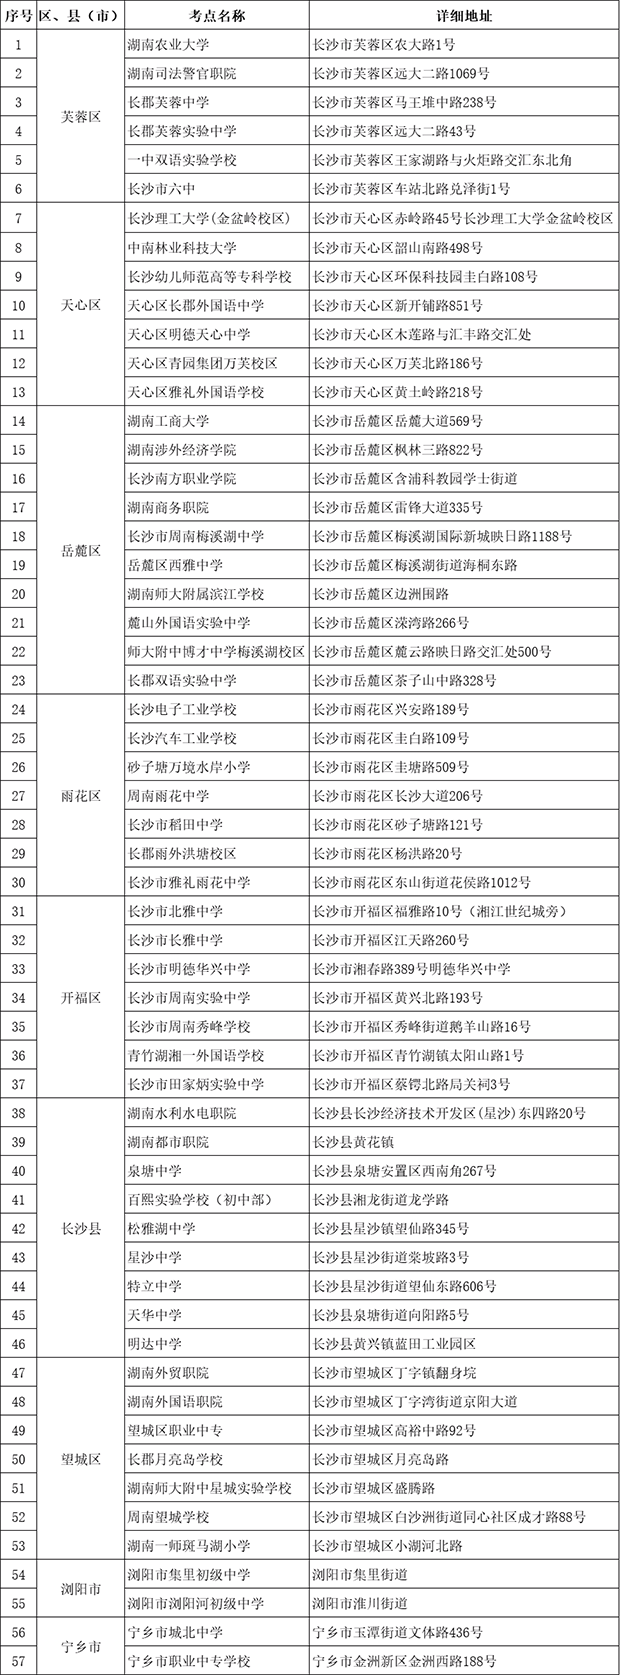 包含2017湖南自考点考报名的词条